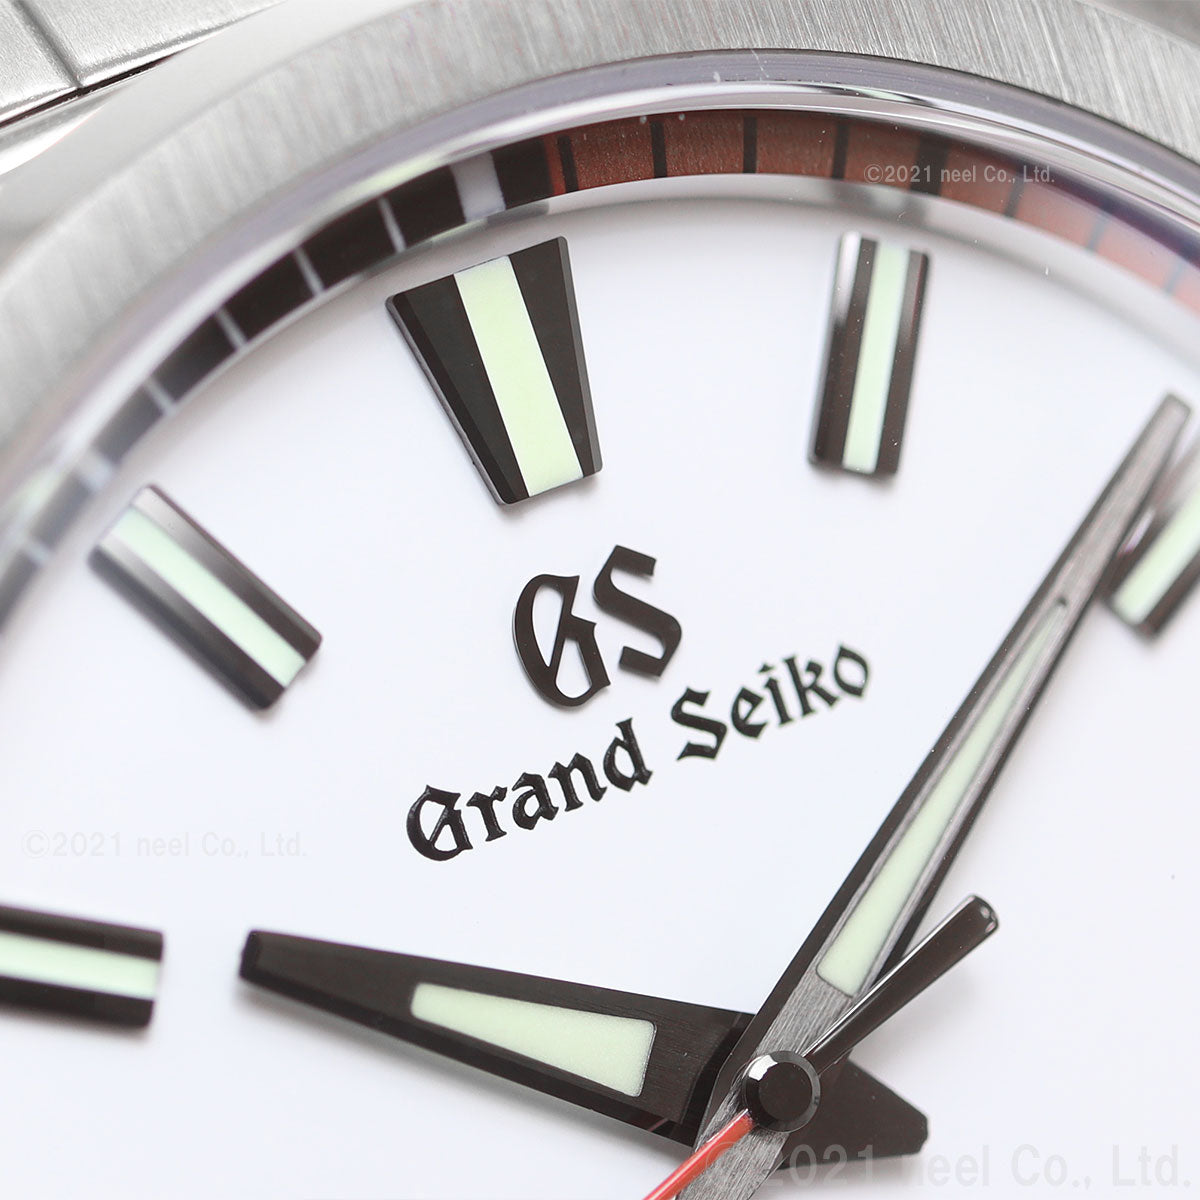 グランドセイコー GRAND SEIKO スポーツ コレクション Sport Collection 強化耐磁モデル 腕時計 メンズ SBGX341【正規品】【36回無金利ローン】